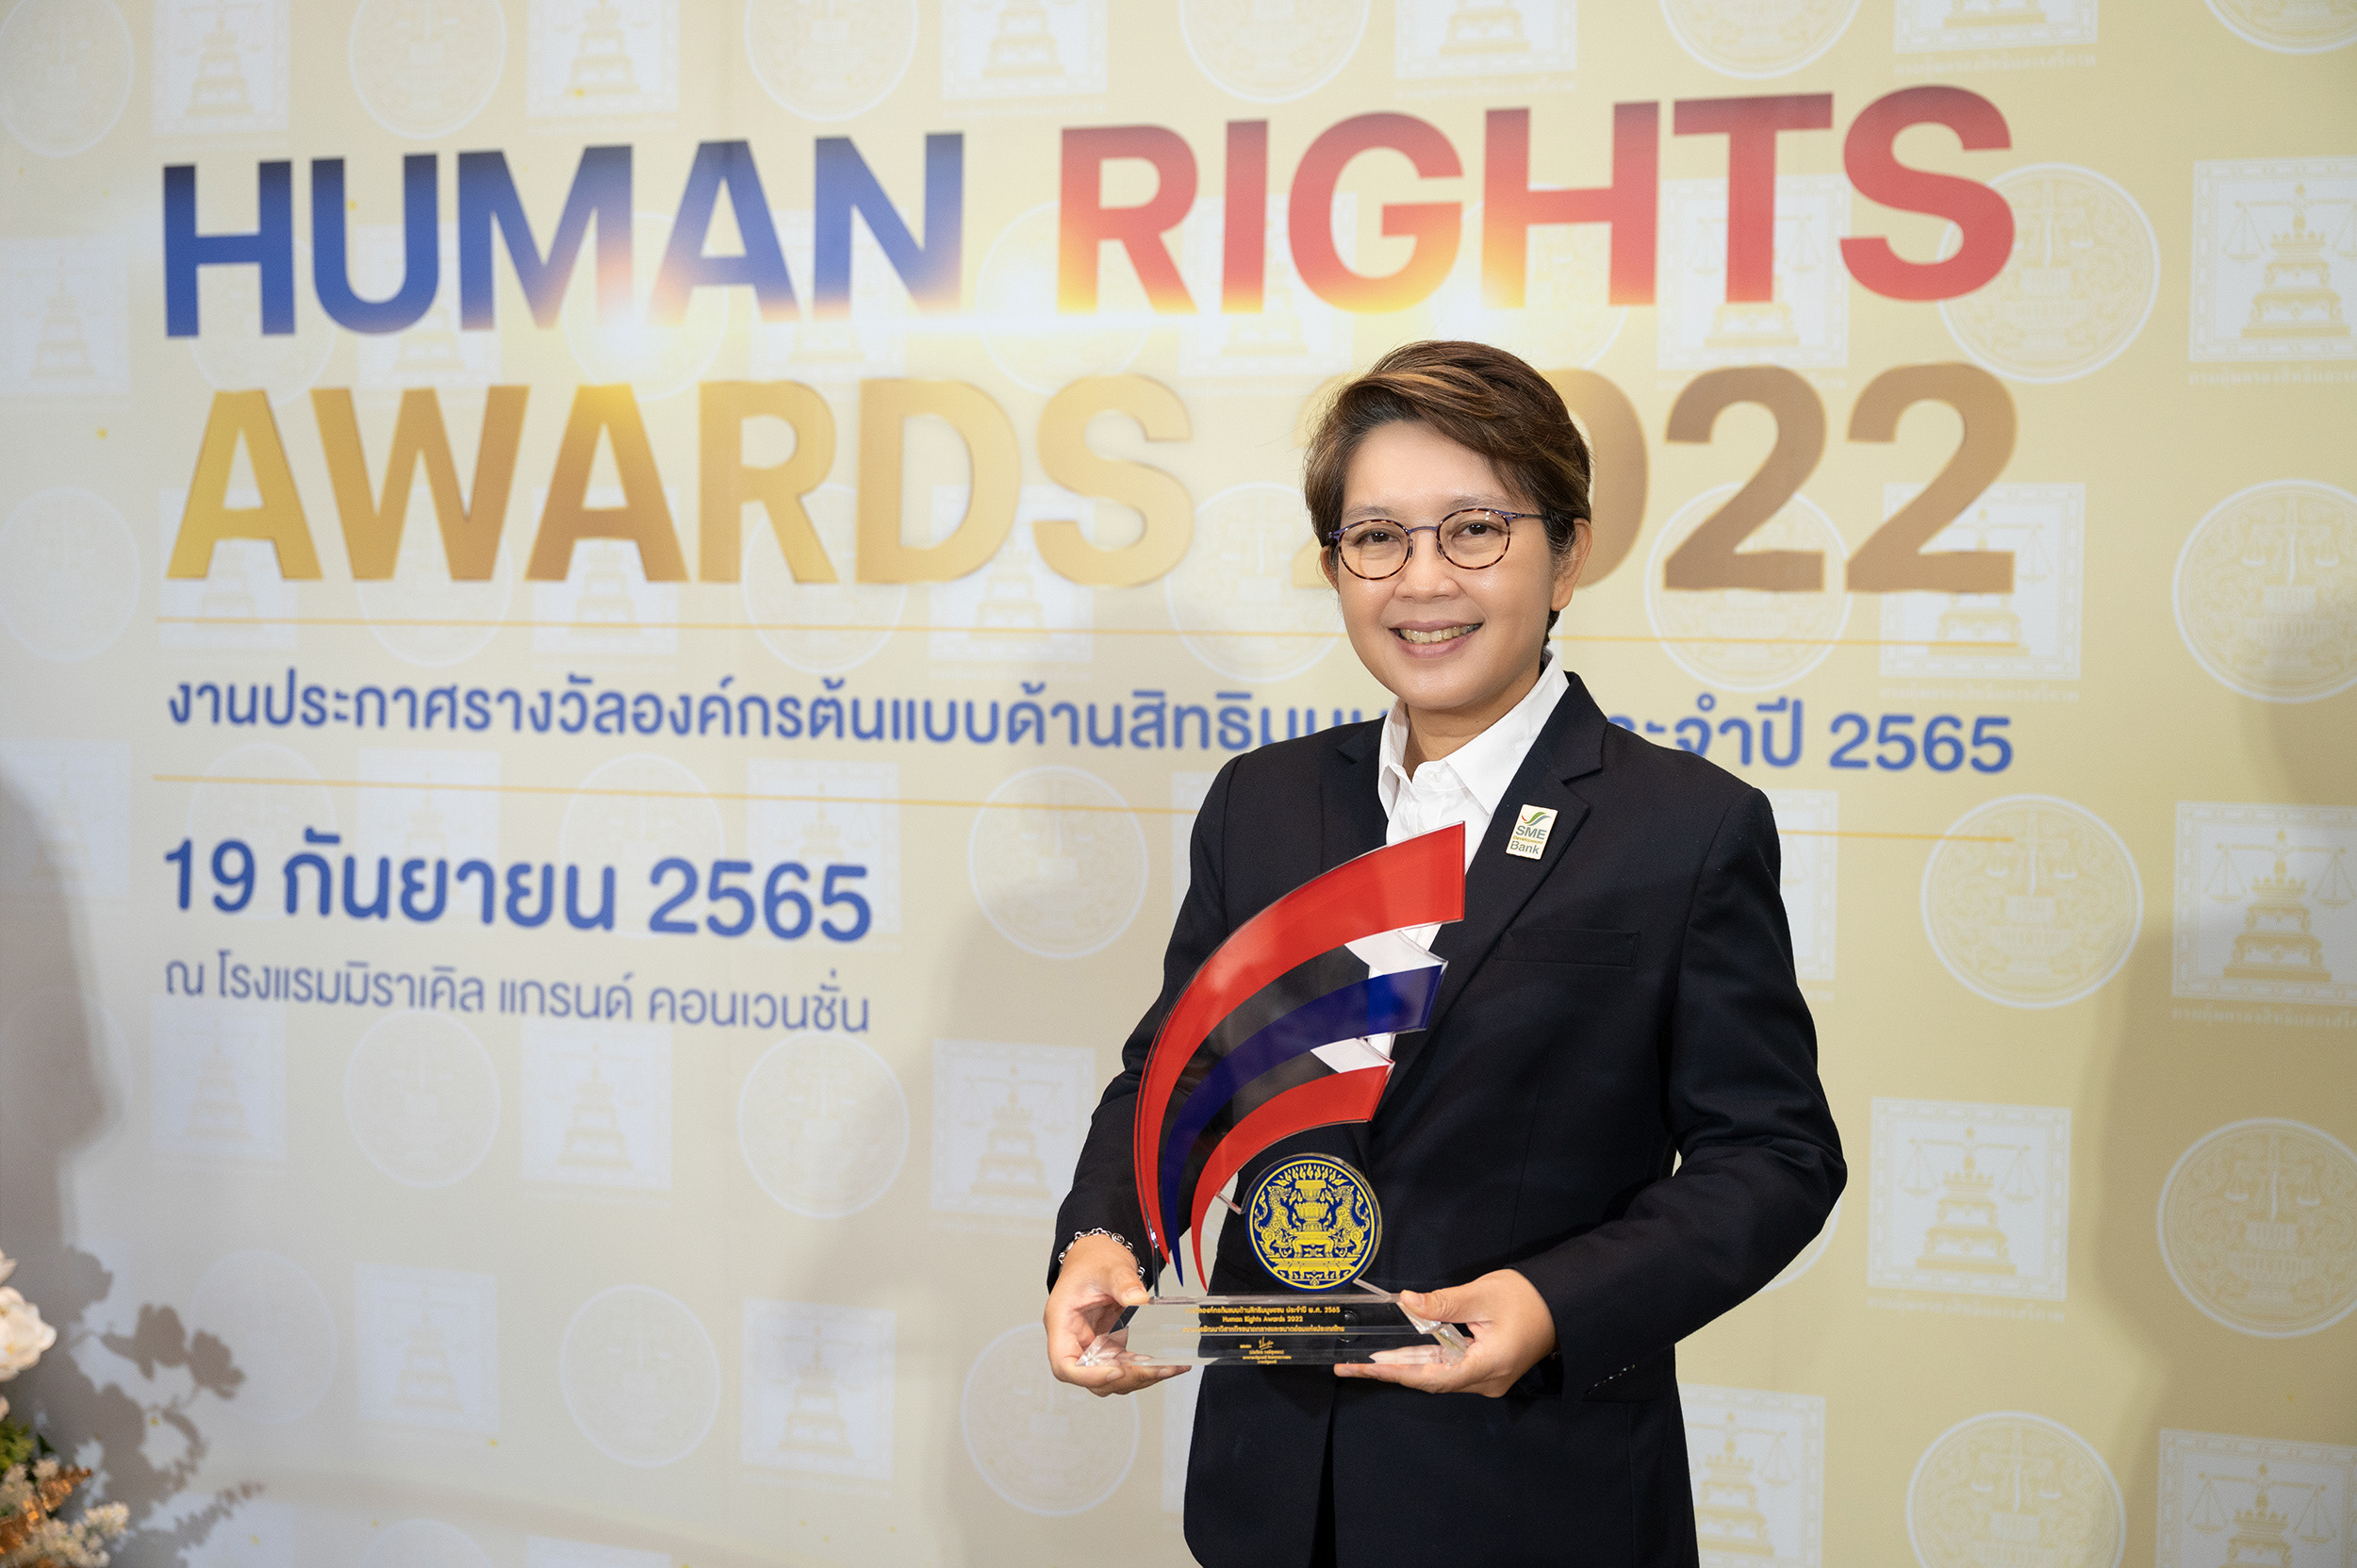 ธพว. แบงก์แห่งแรกคว้ารางวัลดีเด่น ‘องค์กรต้นแบบด้านสิทธิมนุษยชน’ ยืนเคียงข้าง “เติมทุนคู่พัฒนา” เอสเอ็มอีไทย ส่งต่อประโยชน์สู่สังคมเศรษฐกิจเติบโตยั่งยืน